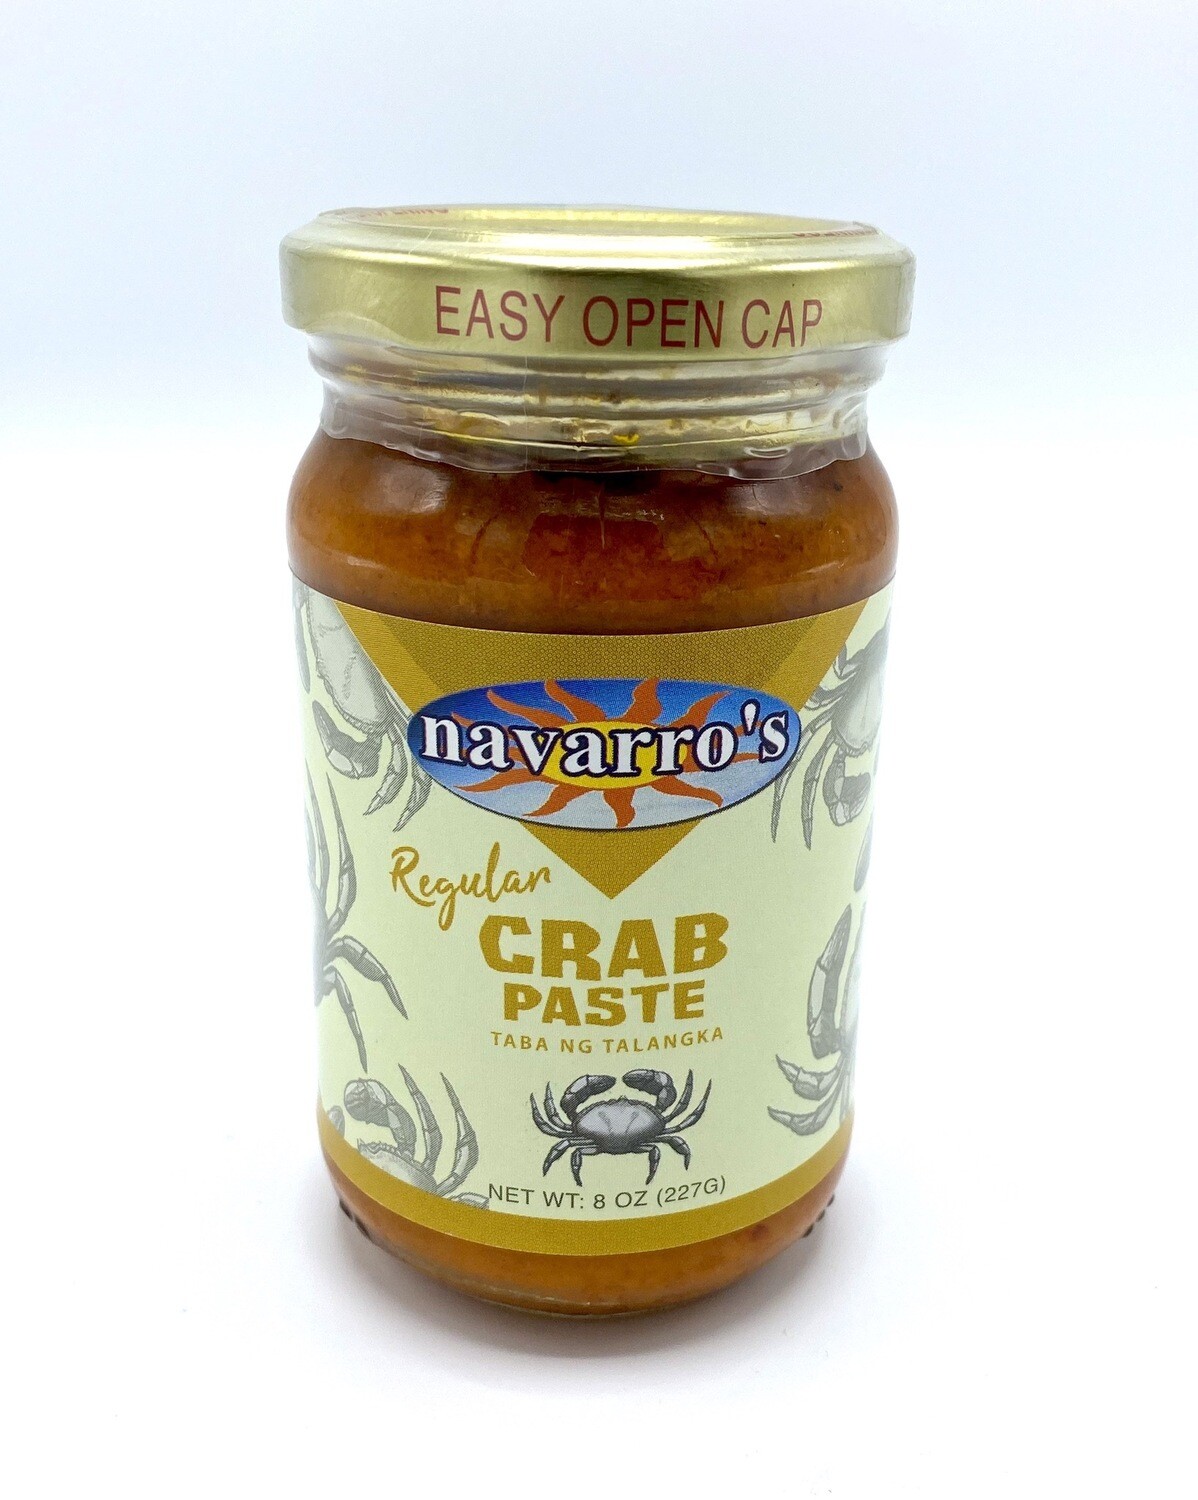 Navarro’s Regular Crab Paste 8 oz